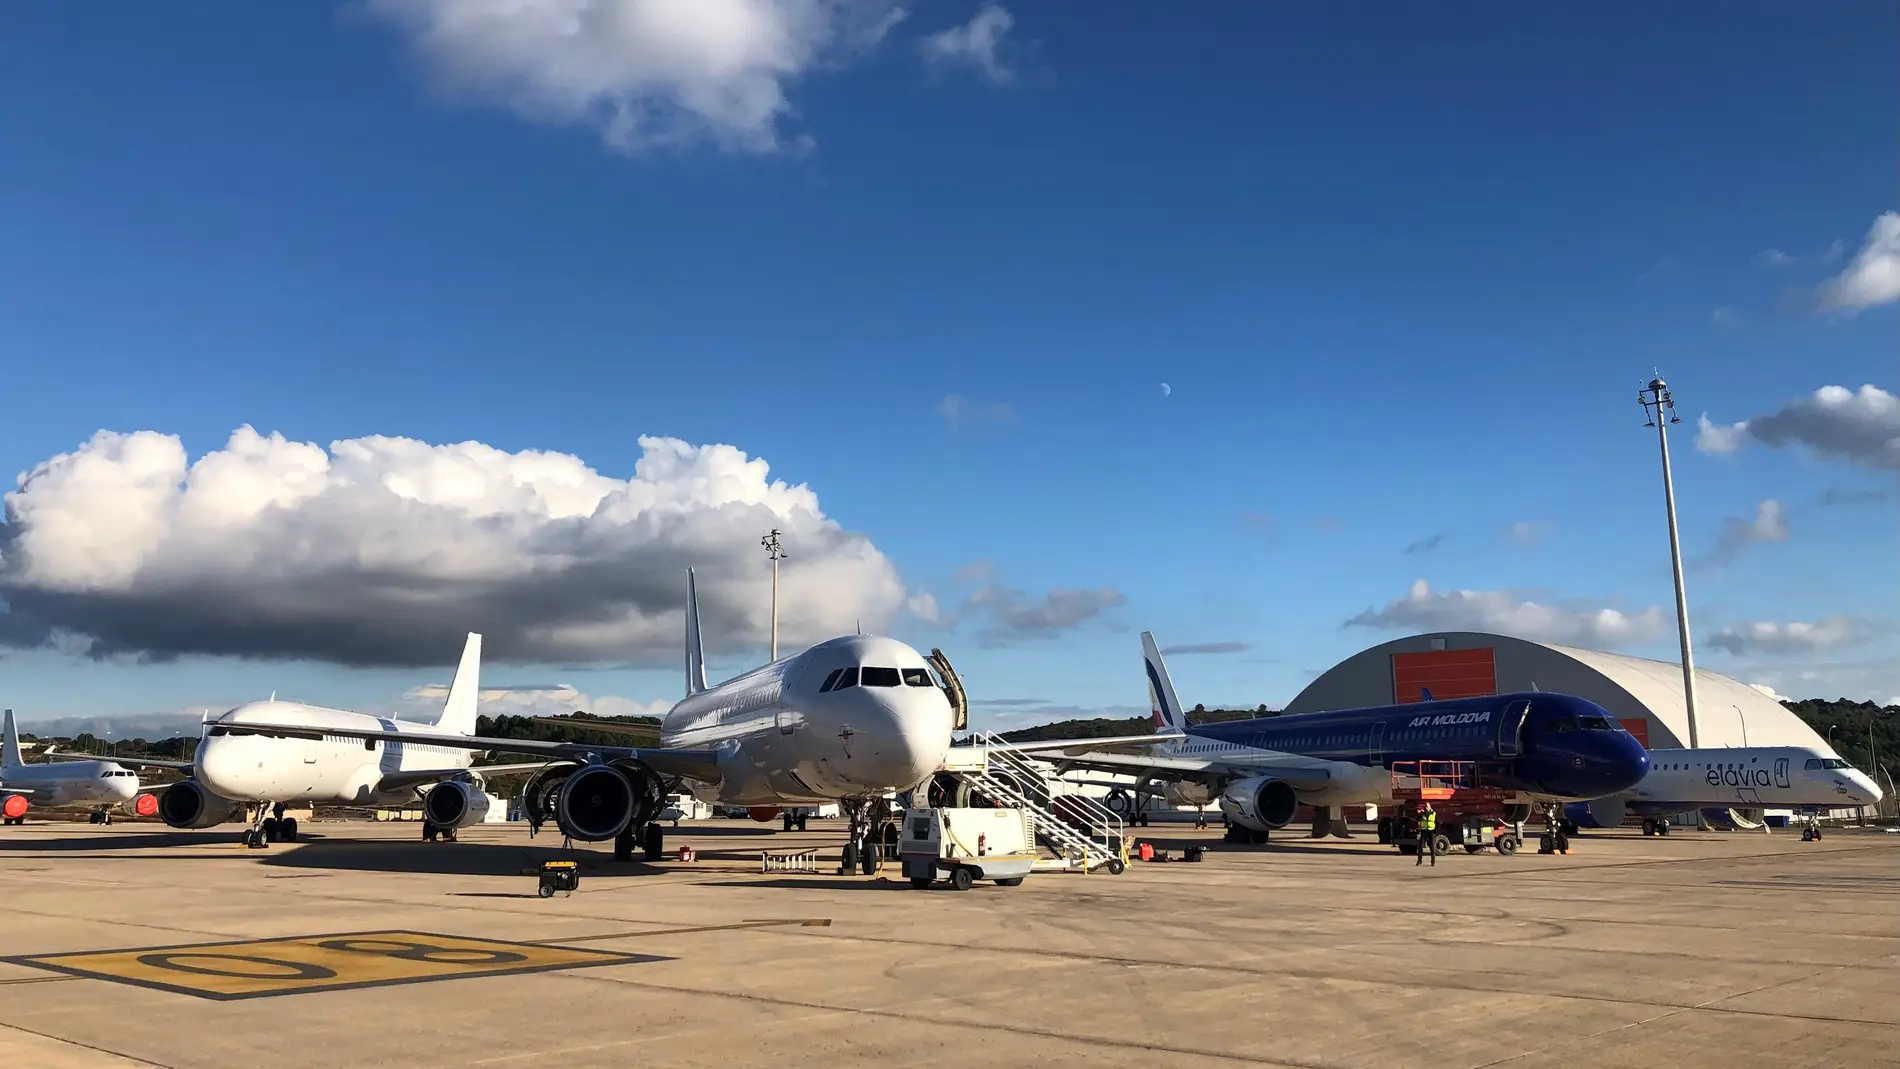 El aeropuerto de Castellón acoge 40 aviones en tareas de mantenimiento